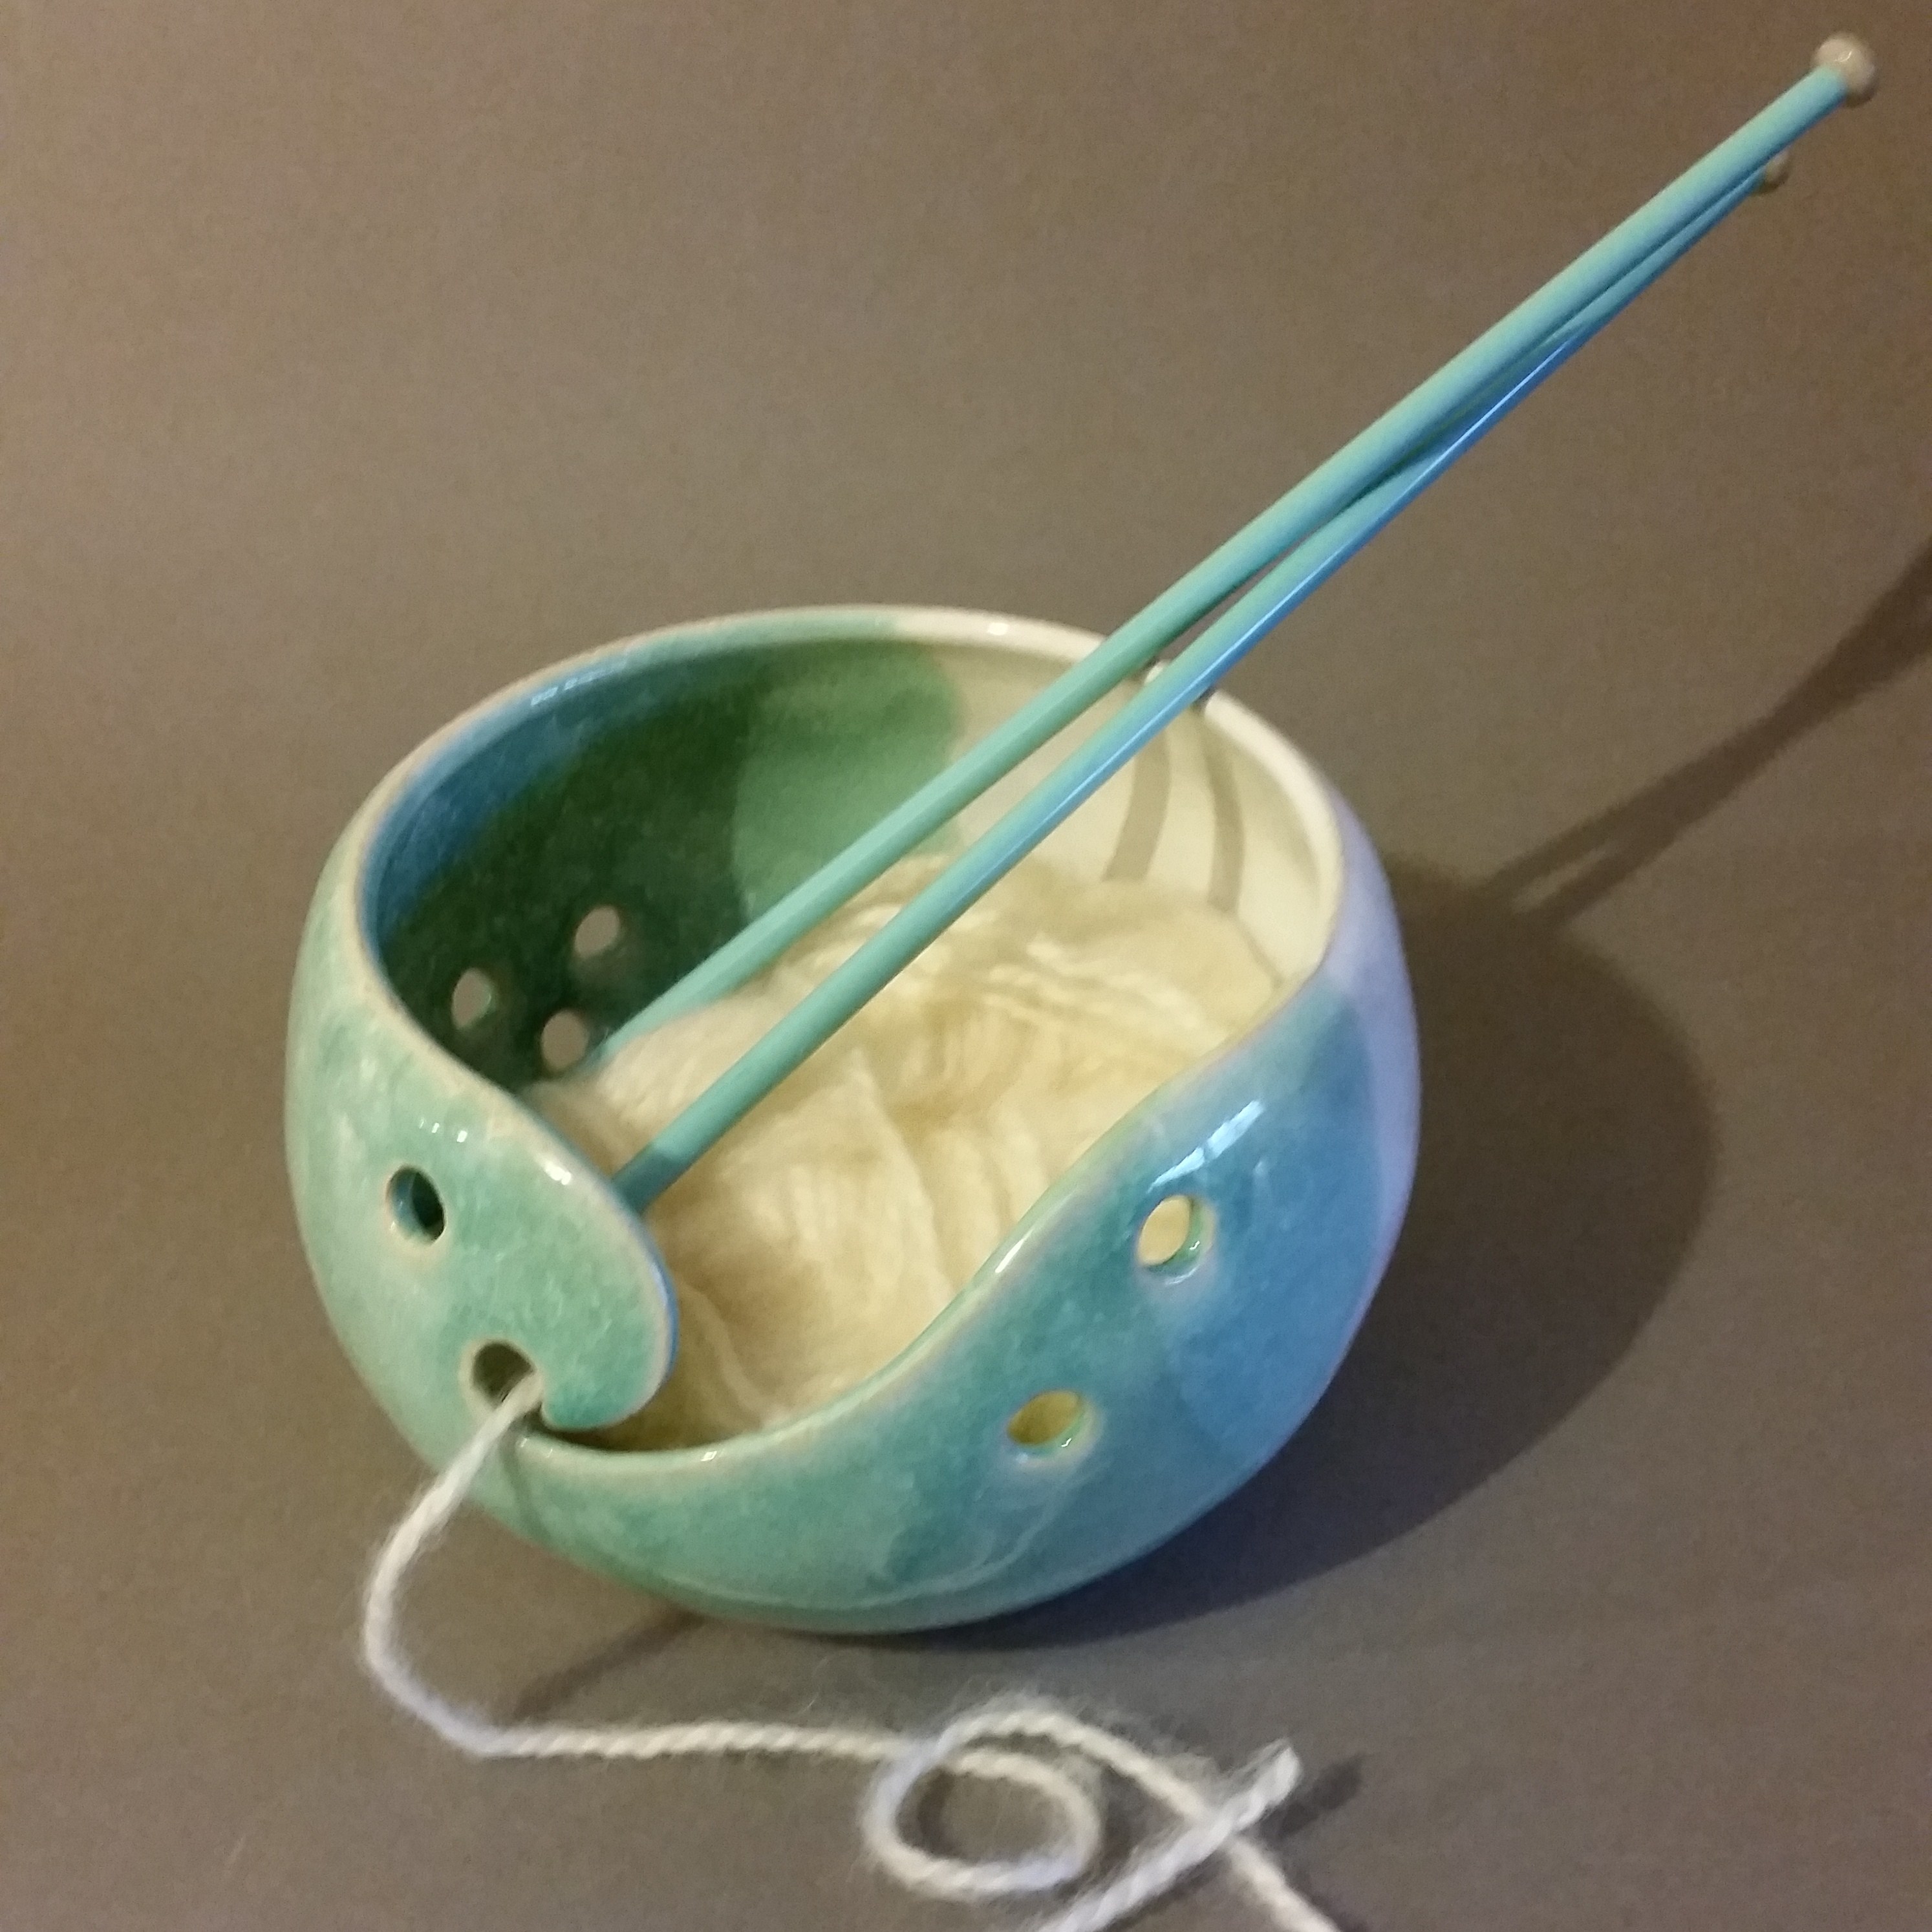 knitting bowl